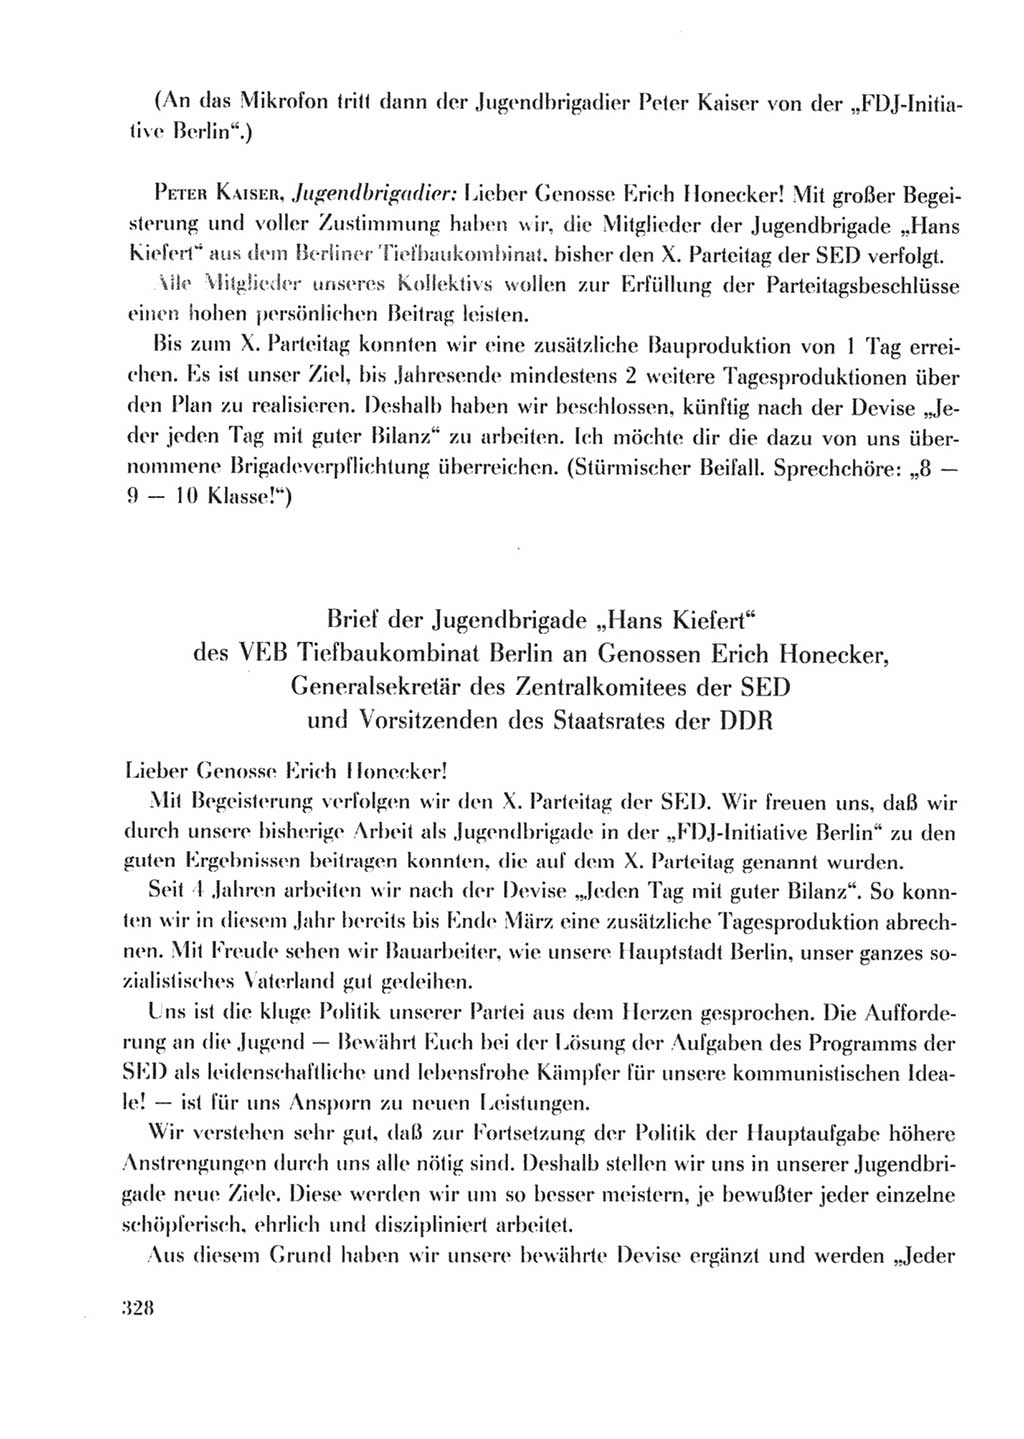 Protokoll der Verhandlungen des Ⅹ. Parteitages der Sozialistischen Einheitspartei Deutschlands (SED) [Deutsche Demokratische Republik (DDR)] 1981, Band 2, Seite 328 (Prot. Verh. Ⅹ. PT SED DDR 1981, Bd. 2, S. 328)